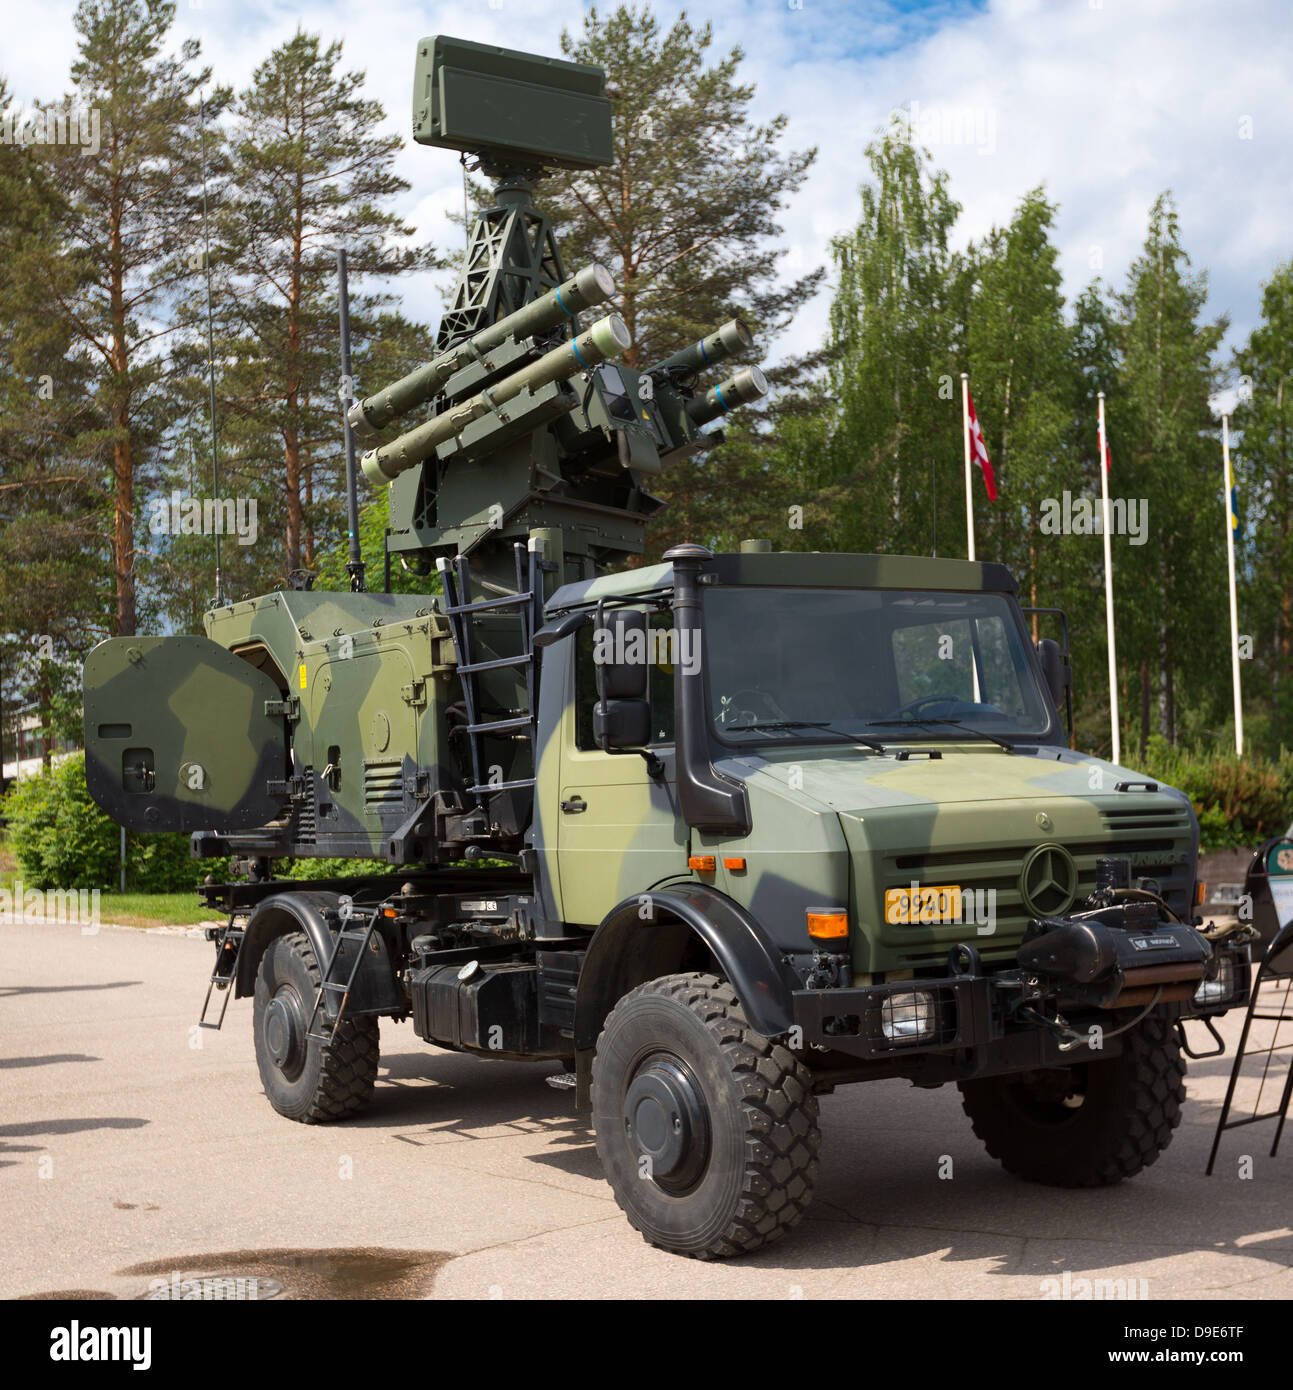 El ejército finlandés bólido de defensa aérea de corto alcance (SHORAD) sistema de misiles guiados de láser montado sobre un unimog 5000 4WD-vehículo. Foto de stock